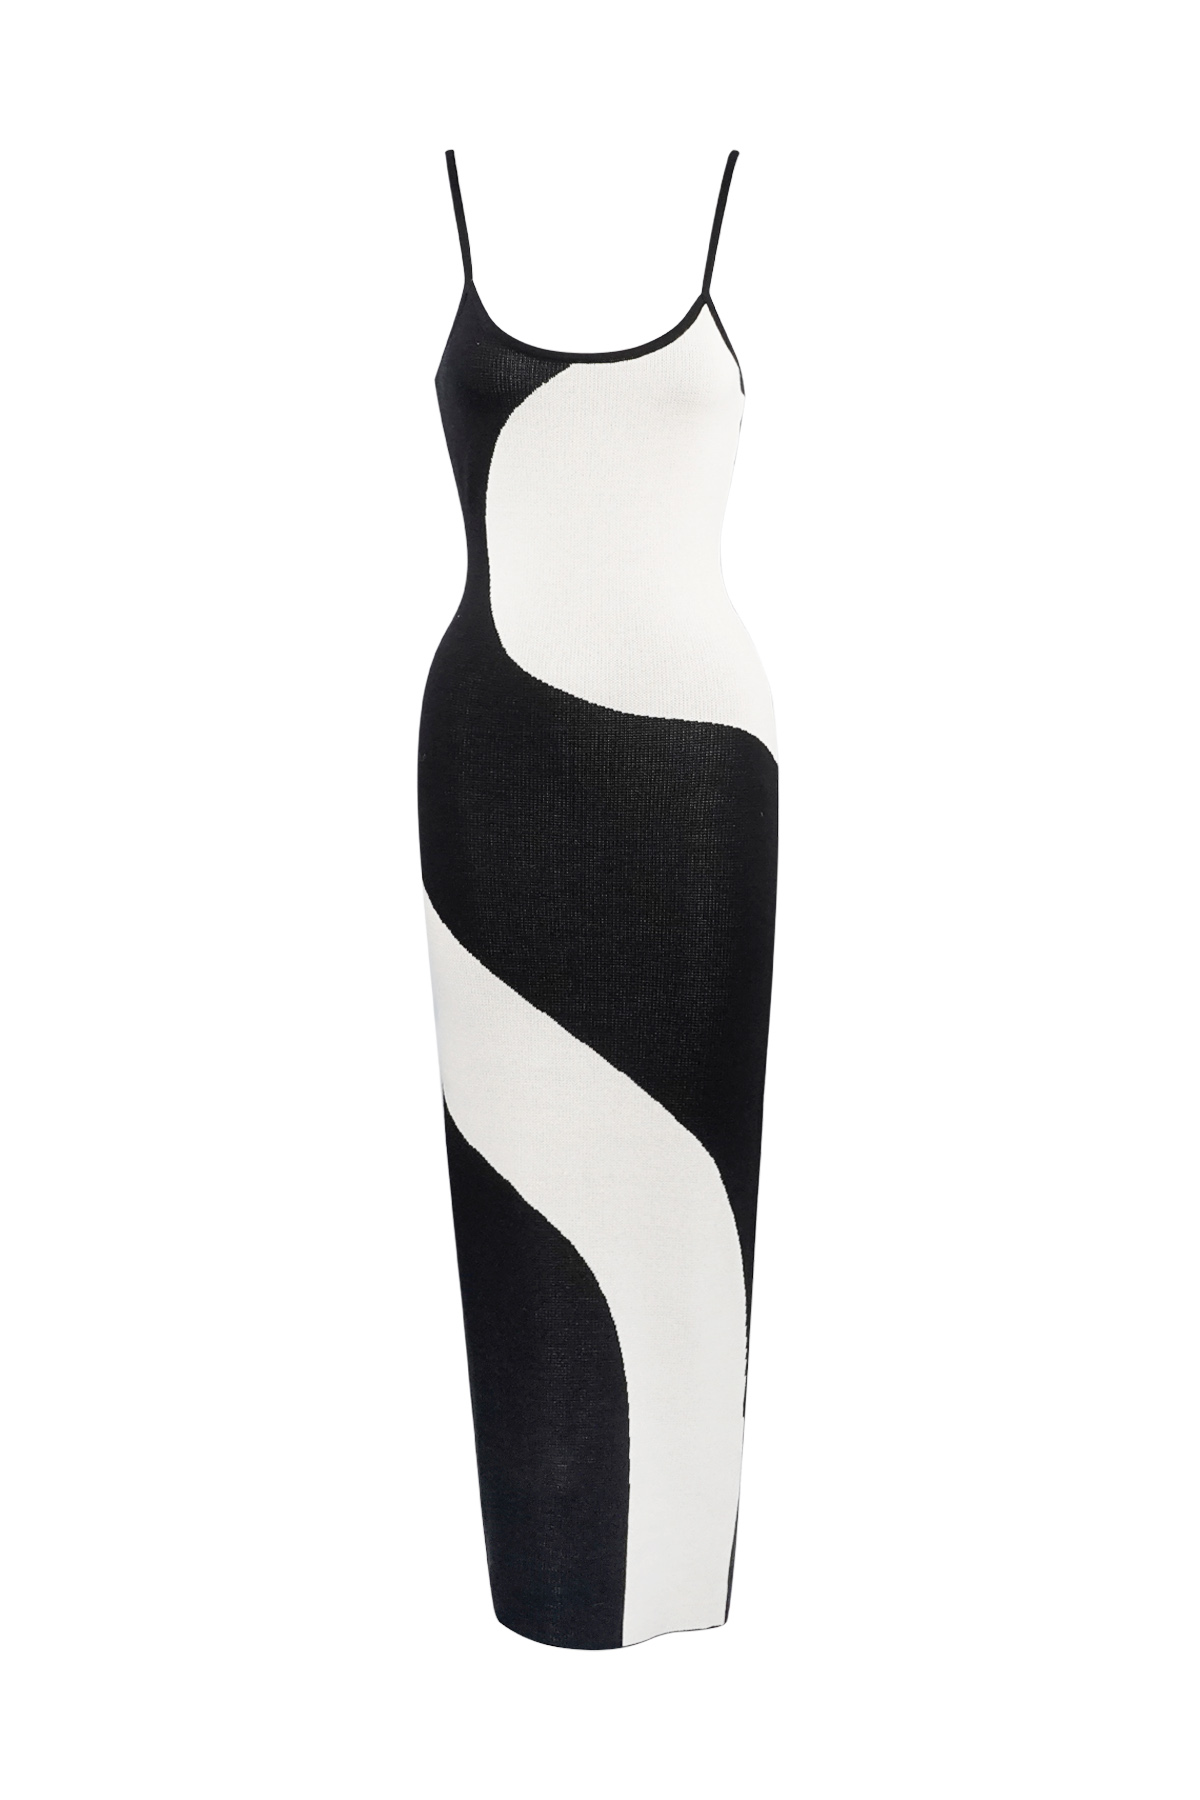 Kleid mit Bio-Print – Schwarz und Weiß